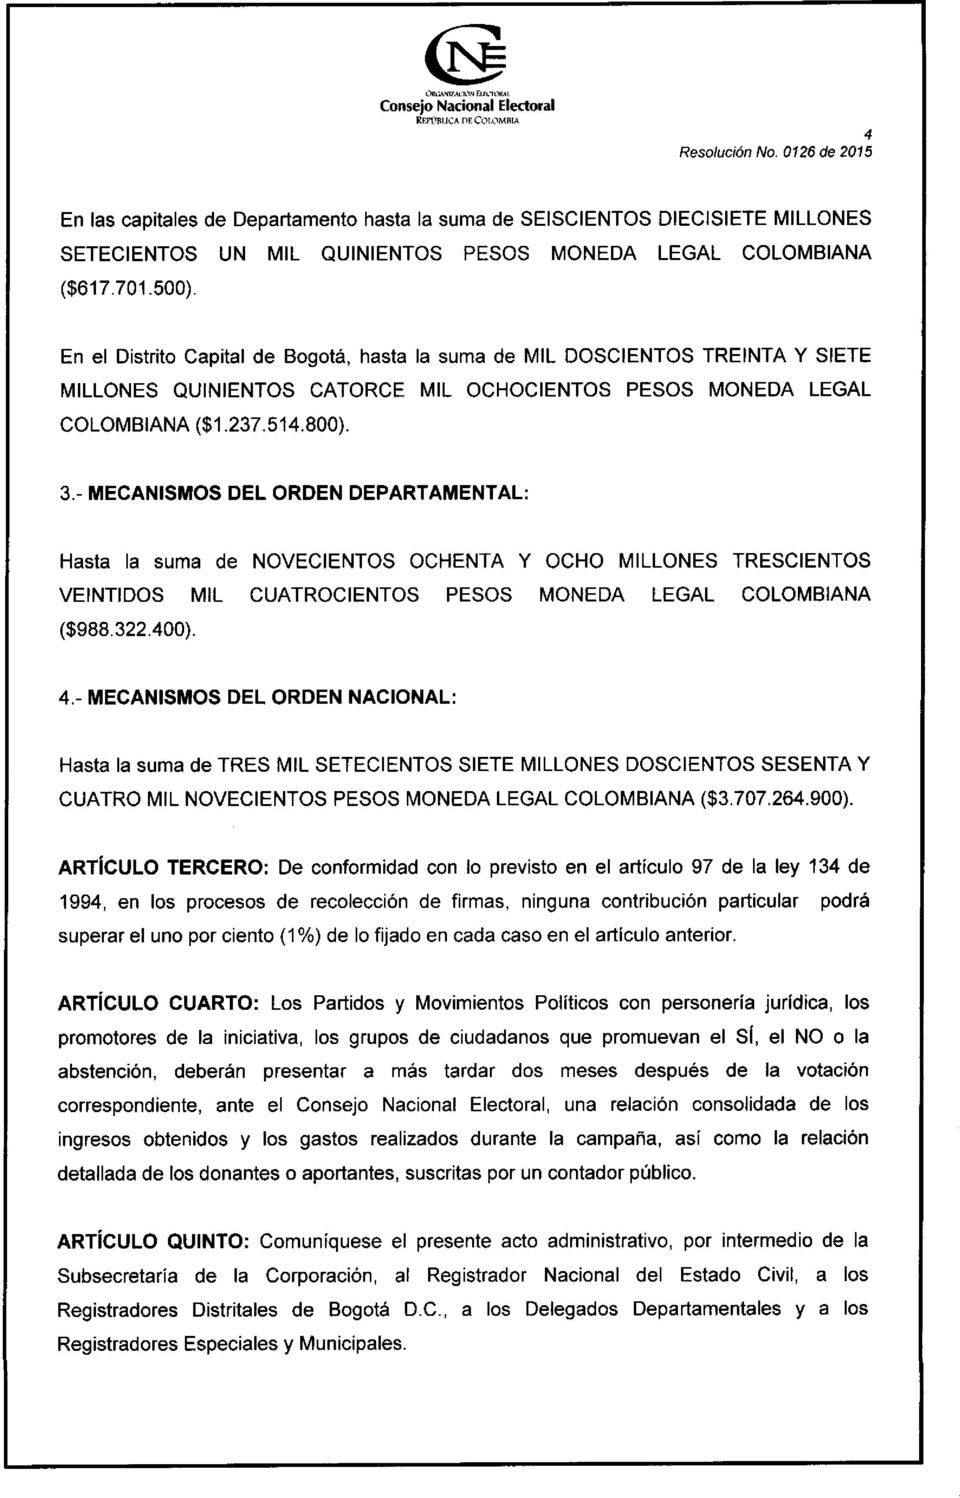 - MECANISMOS DEL ORDEN DEPARTAMENTAL: Hasta la suma de NOVECIENTOS OCHENTA Y OCHO MILLONES TRESCIENTOS VEINTIDOS MIL CUATROCIENTOS PESOS MONEDA LEGAL COLOMBIANA ($988.322.400). 4.